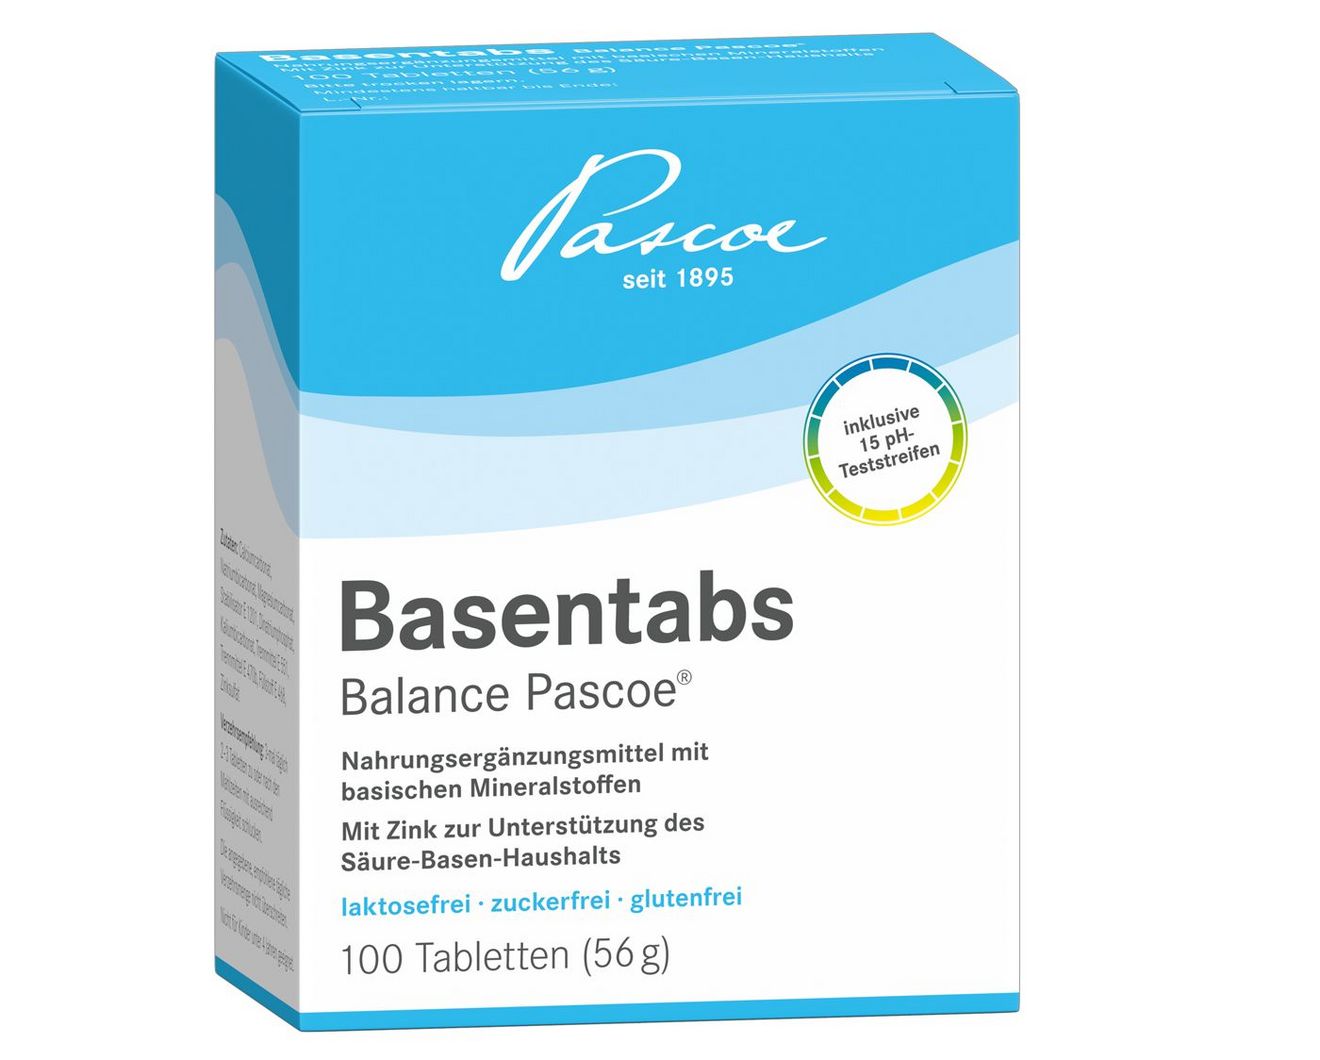 Basentabs pH-balance Pascoe 100 Tabletten Packshot PZN 02246478